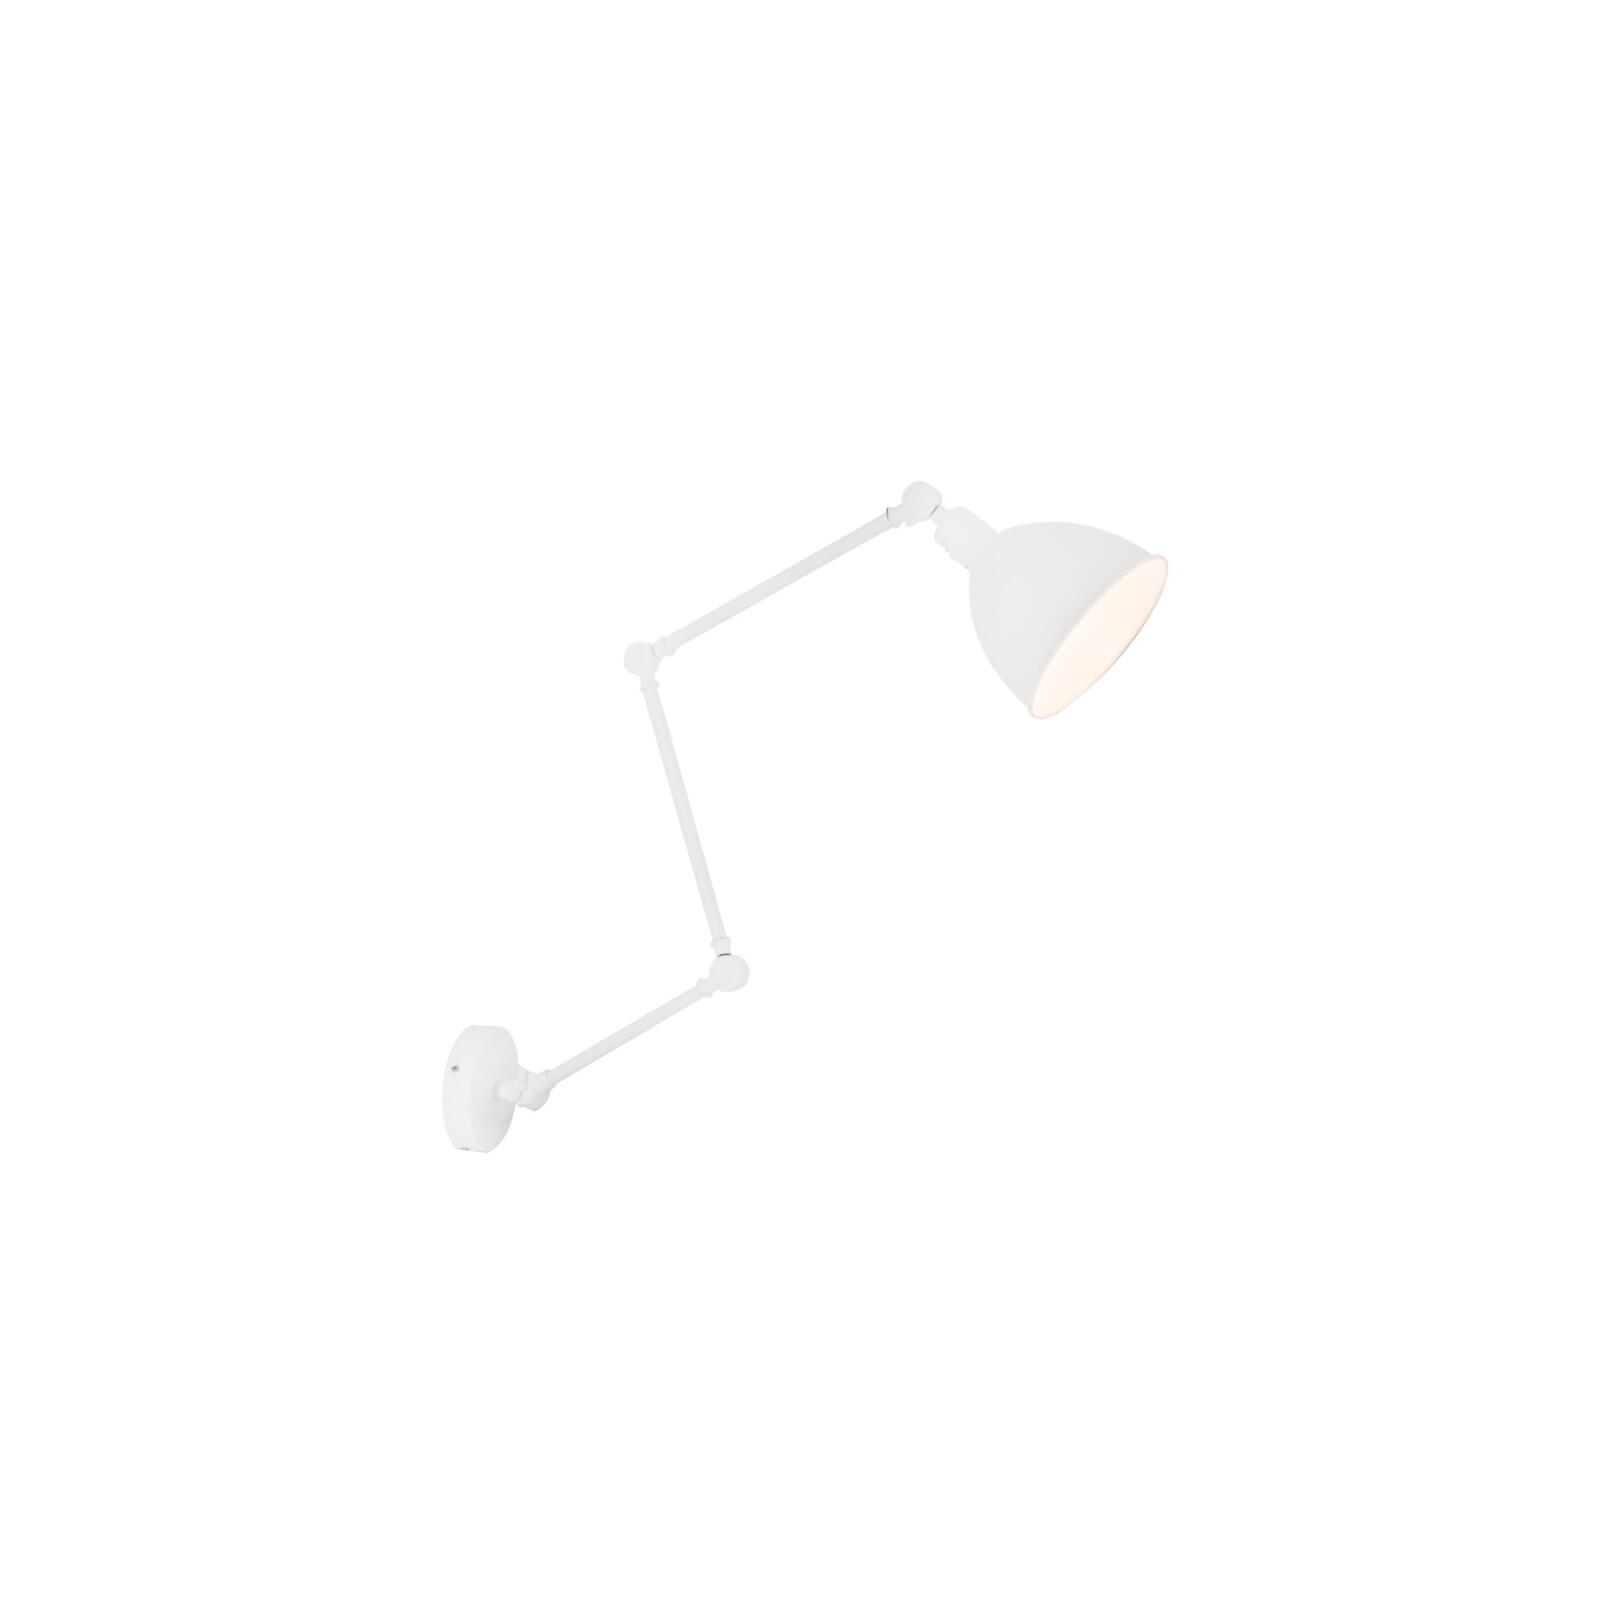 By Rydens verstellbare Wandleuchte Länge & Onlineshop E27 mit 122cm Leuchten - Schalter Lampen weiß Bazar